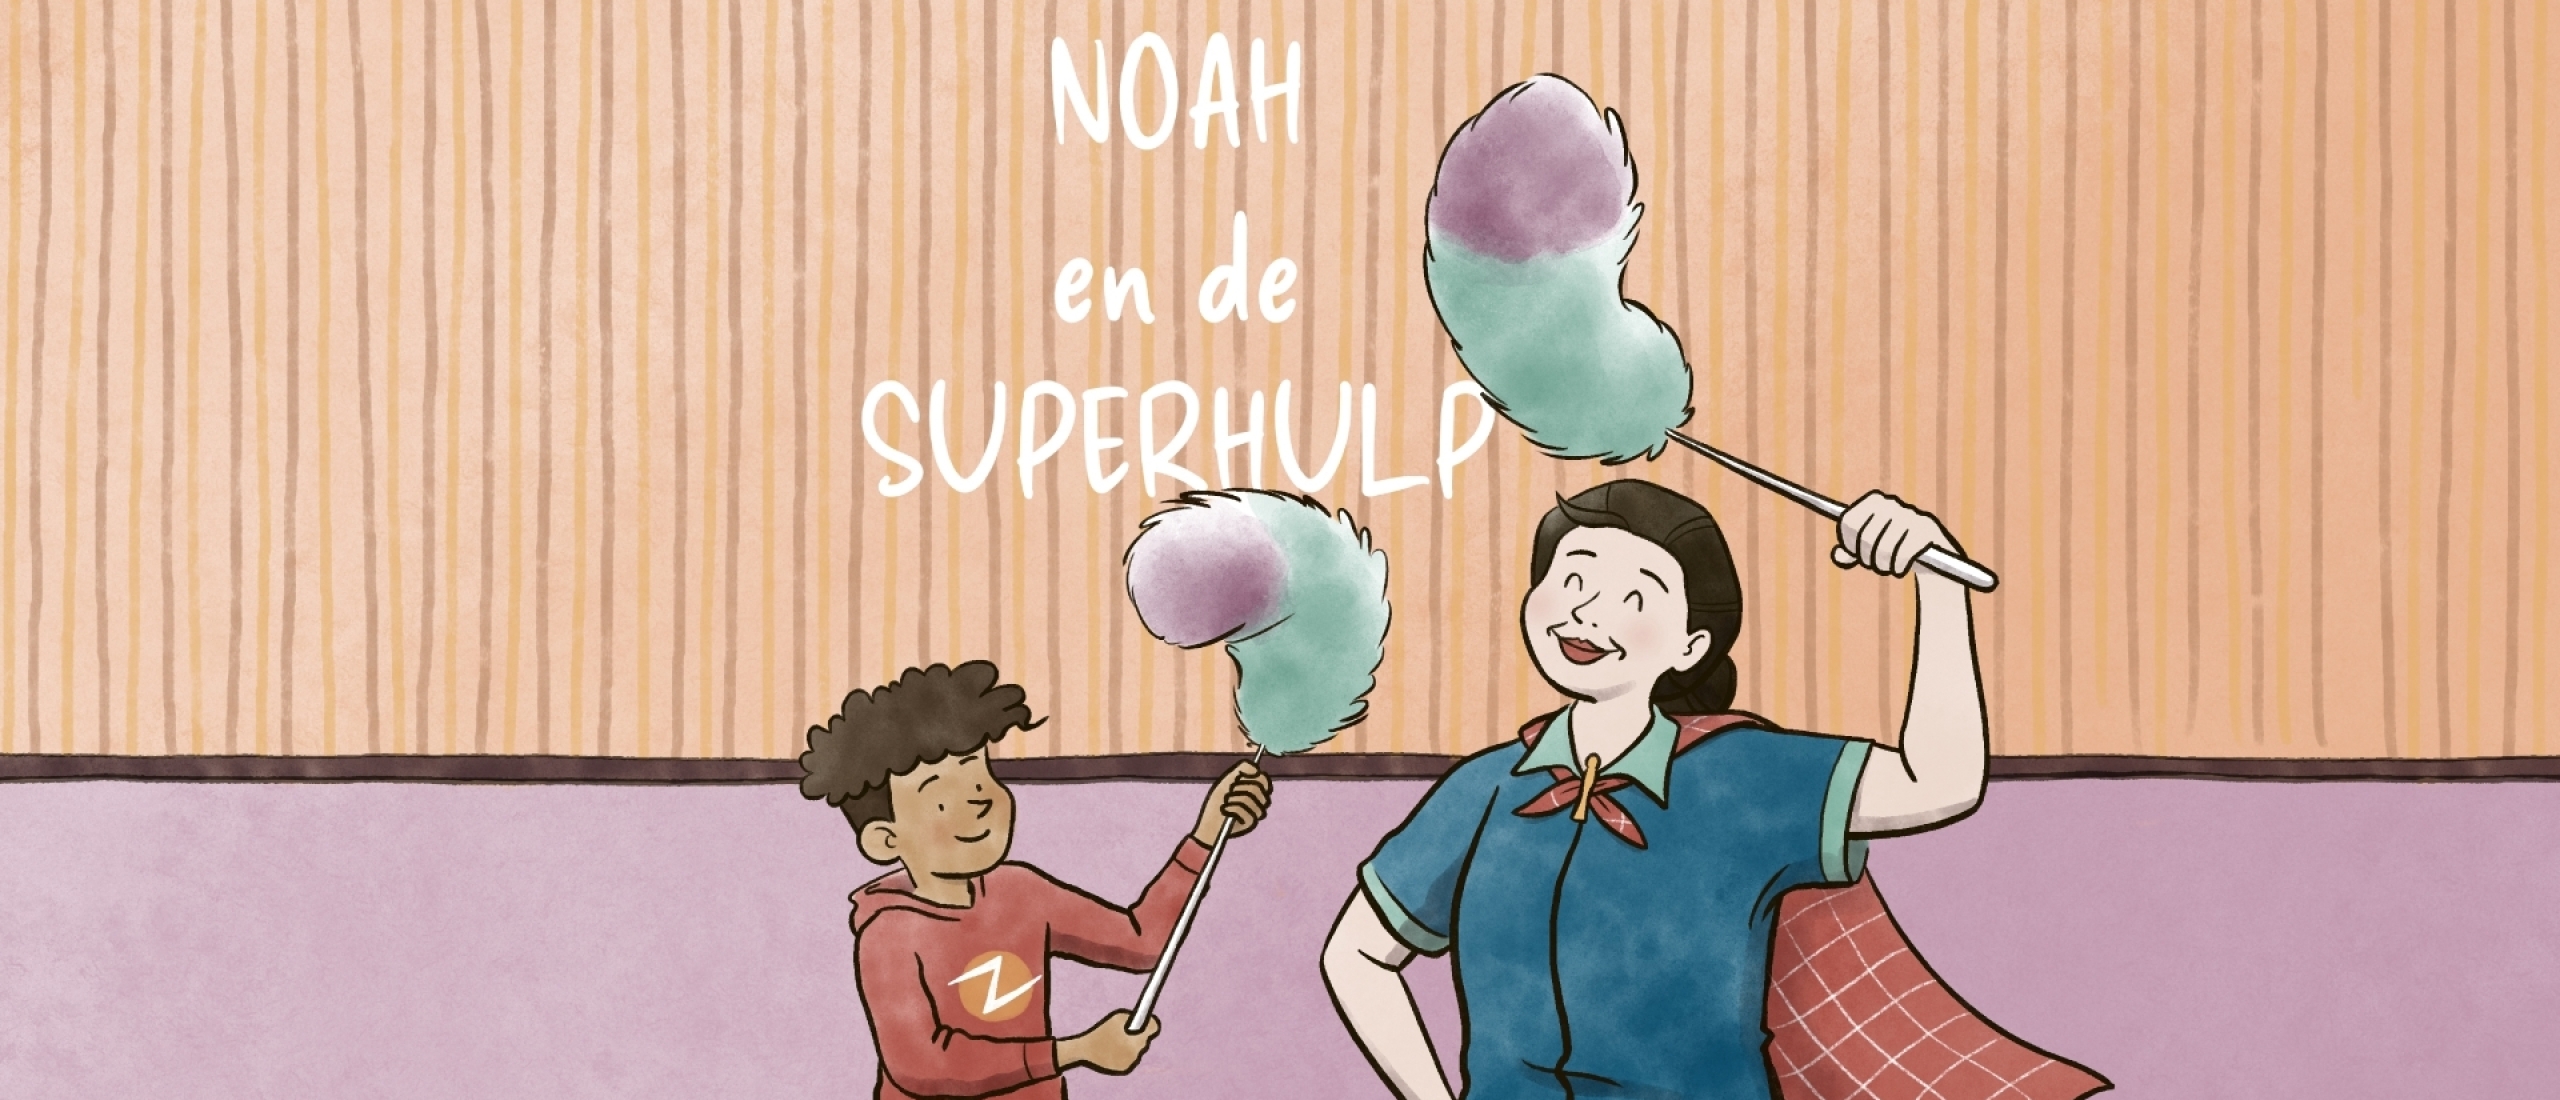 Noah en de Superhulp